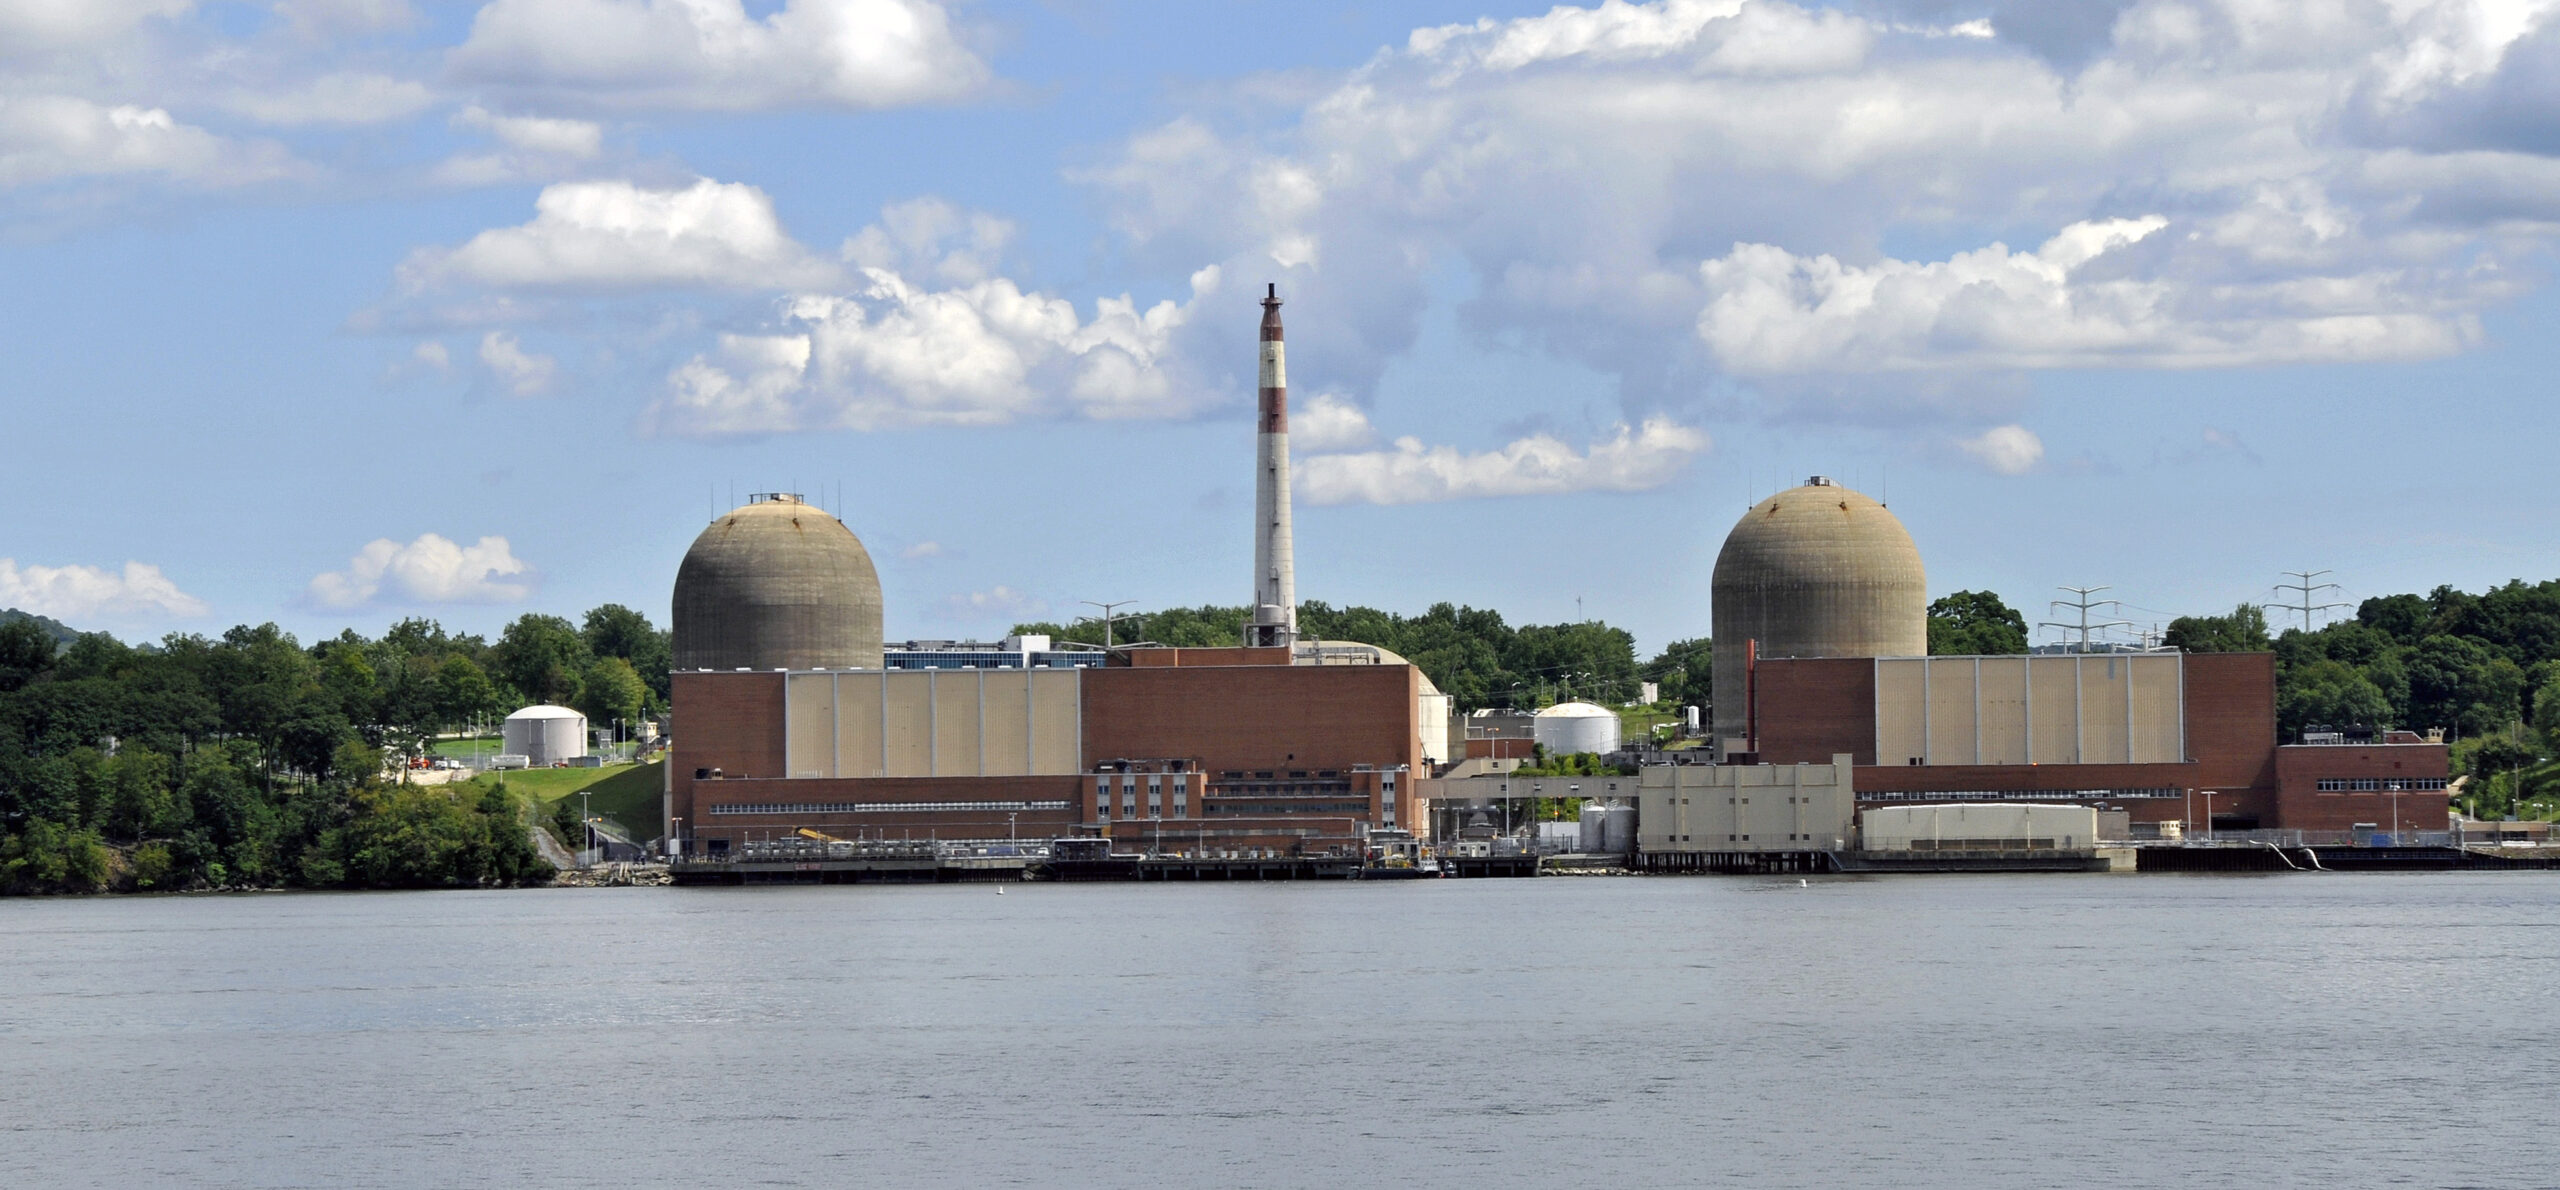 АНУ-ын Нью-Йорк муж дахь Буканан дахь Энэтхэгийн цэгийн эрчим хүчний төв нь дэлхийн анхны торийн реакторын талбай байсан юм.